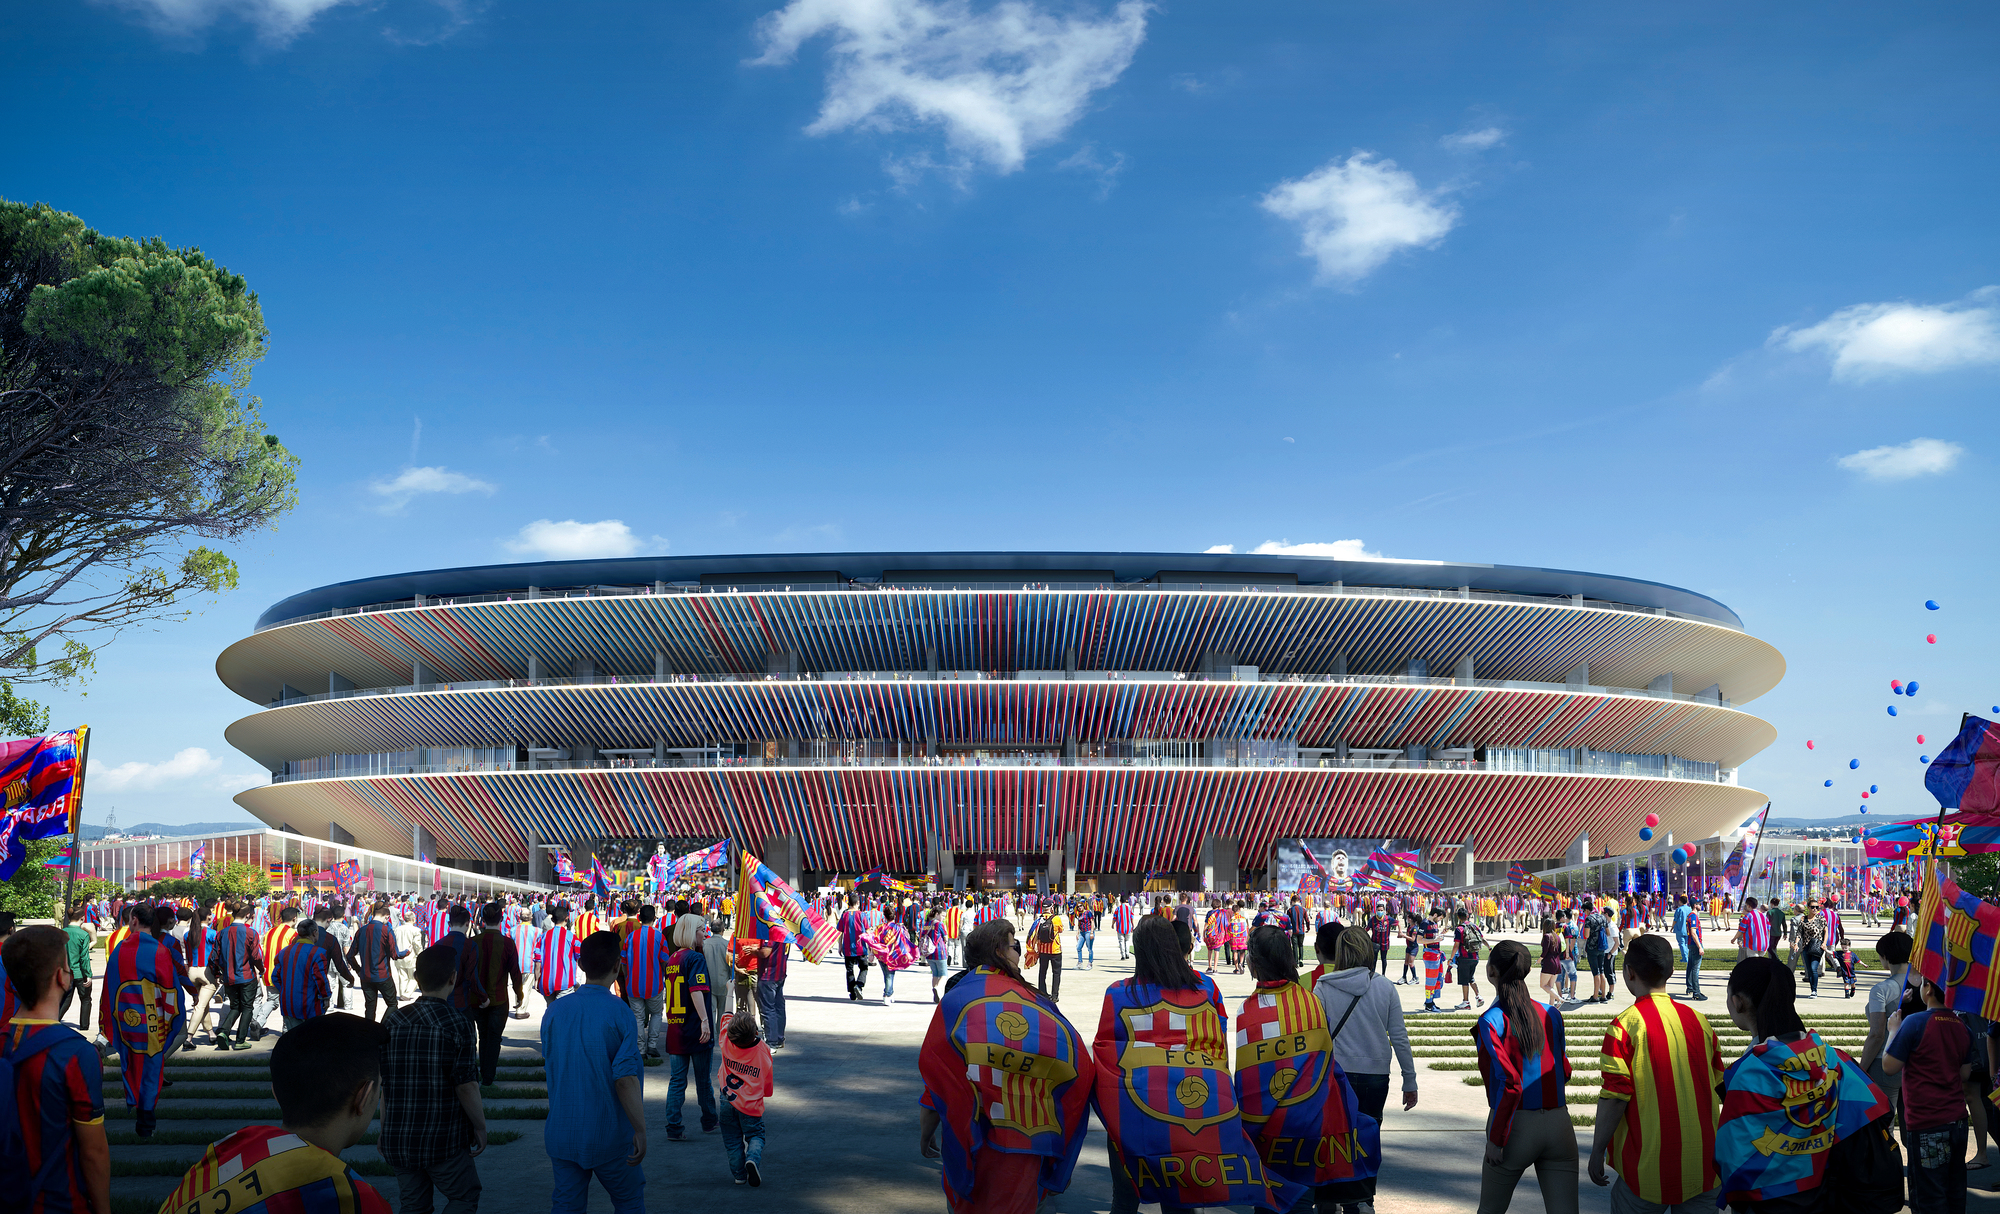 Будущий стадион «Камп Ноу» в Барселоне получил Международную архитектурную премию IAA 2023